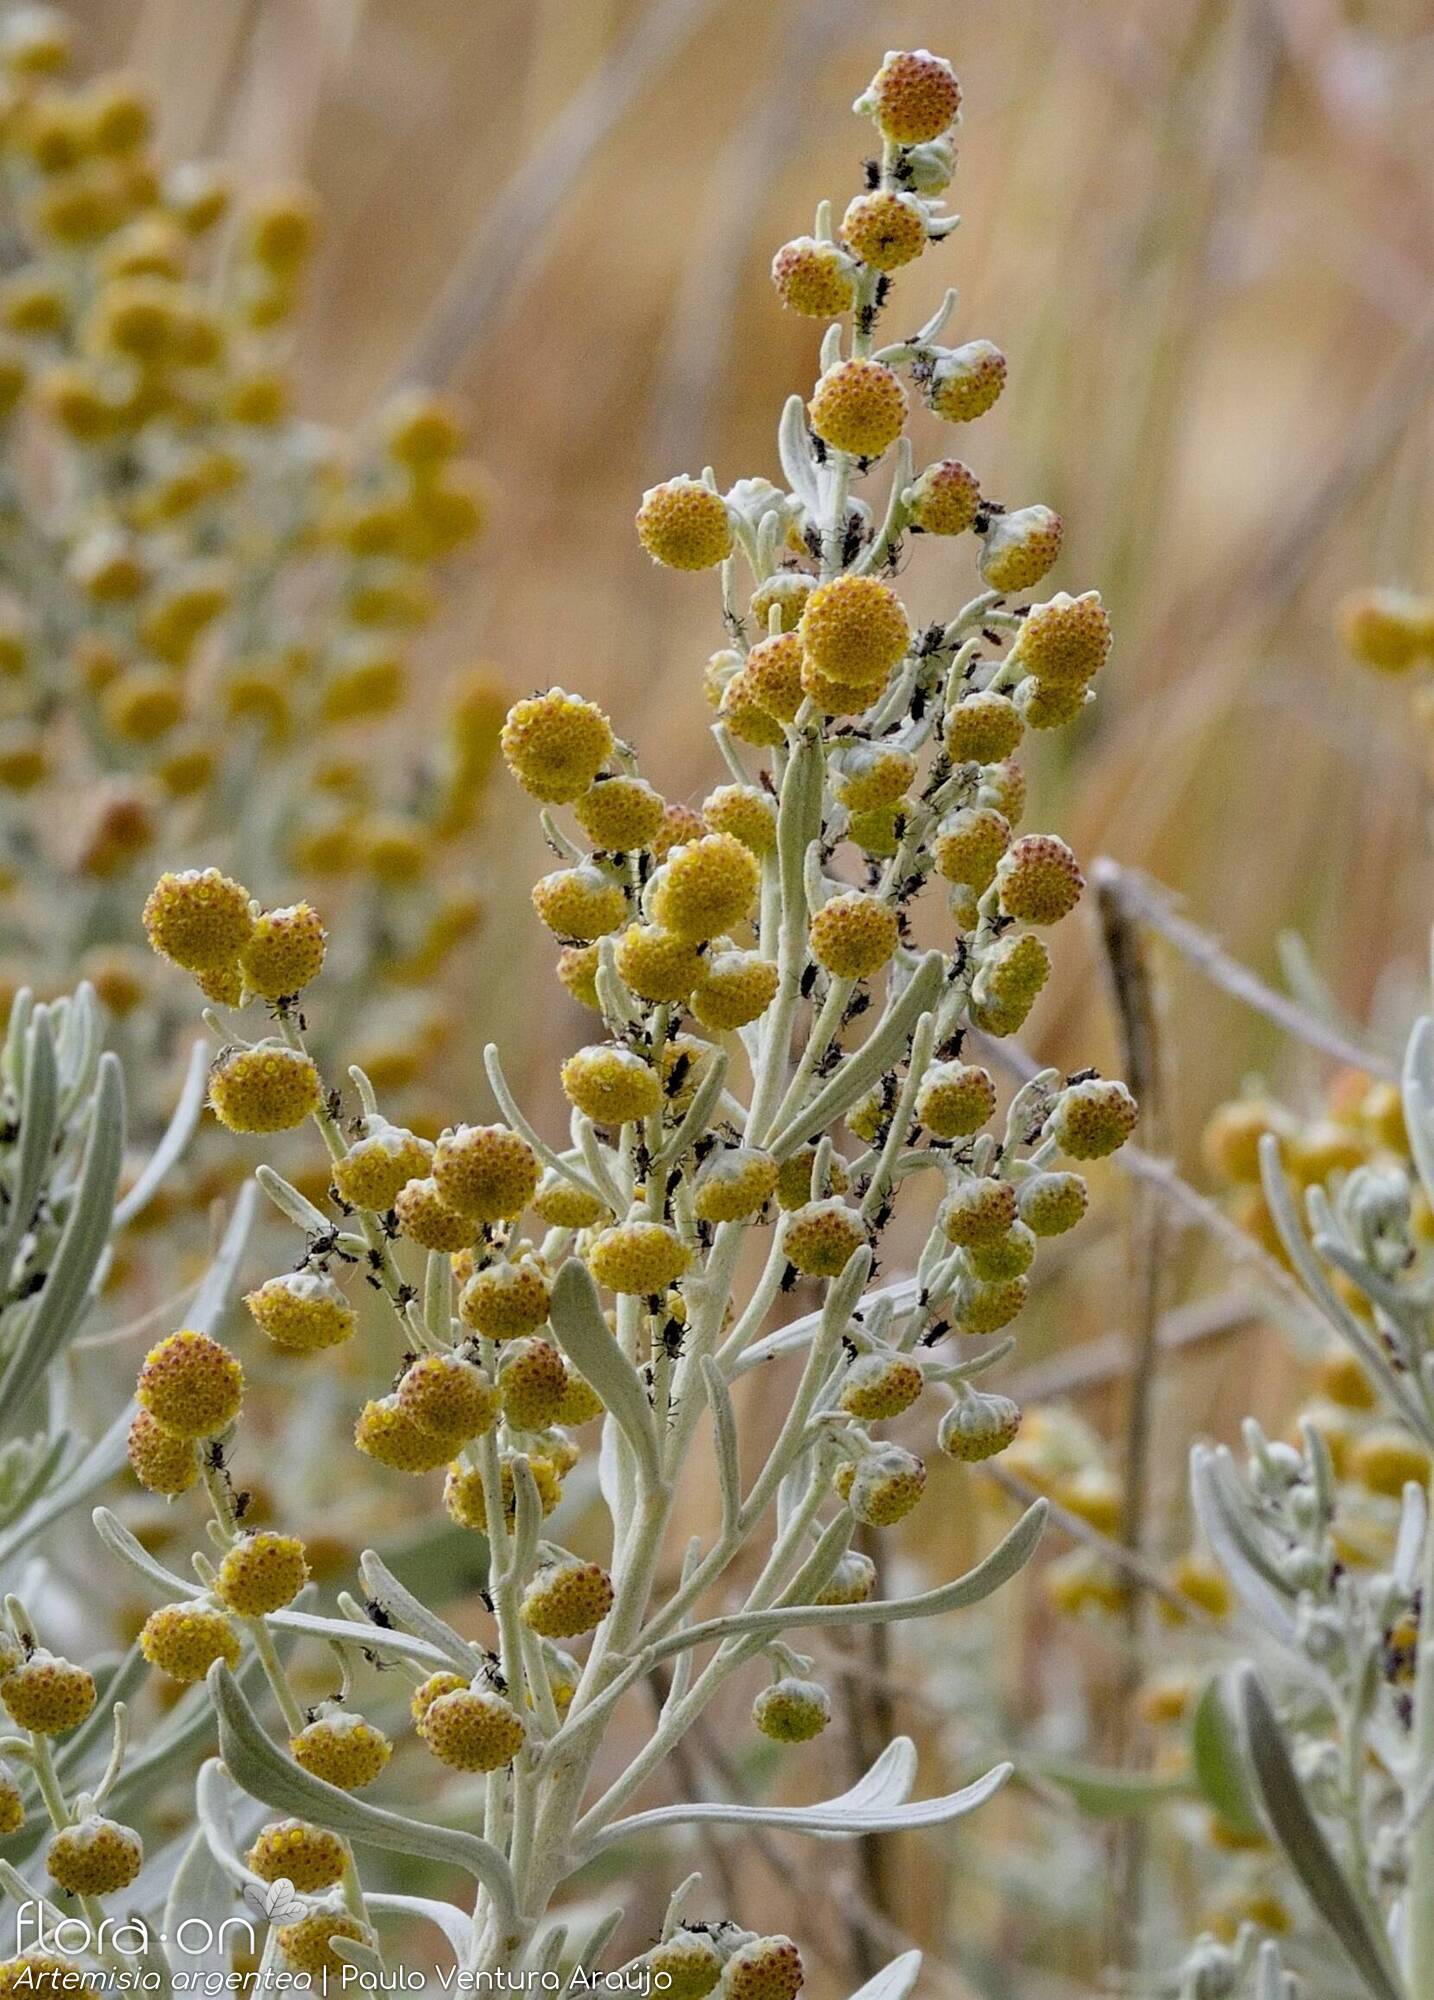 Artemisia argentea - Flor (geral) | Paulo Ventura Araújo; CC BY-NC 4.0